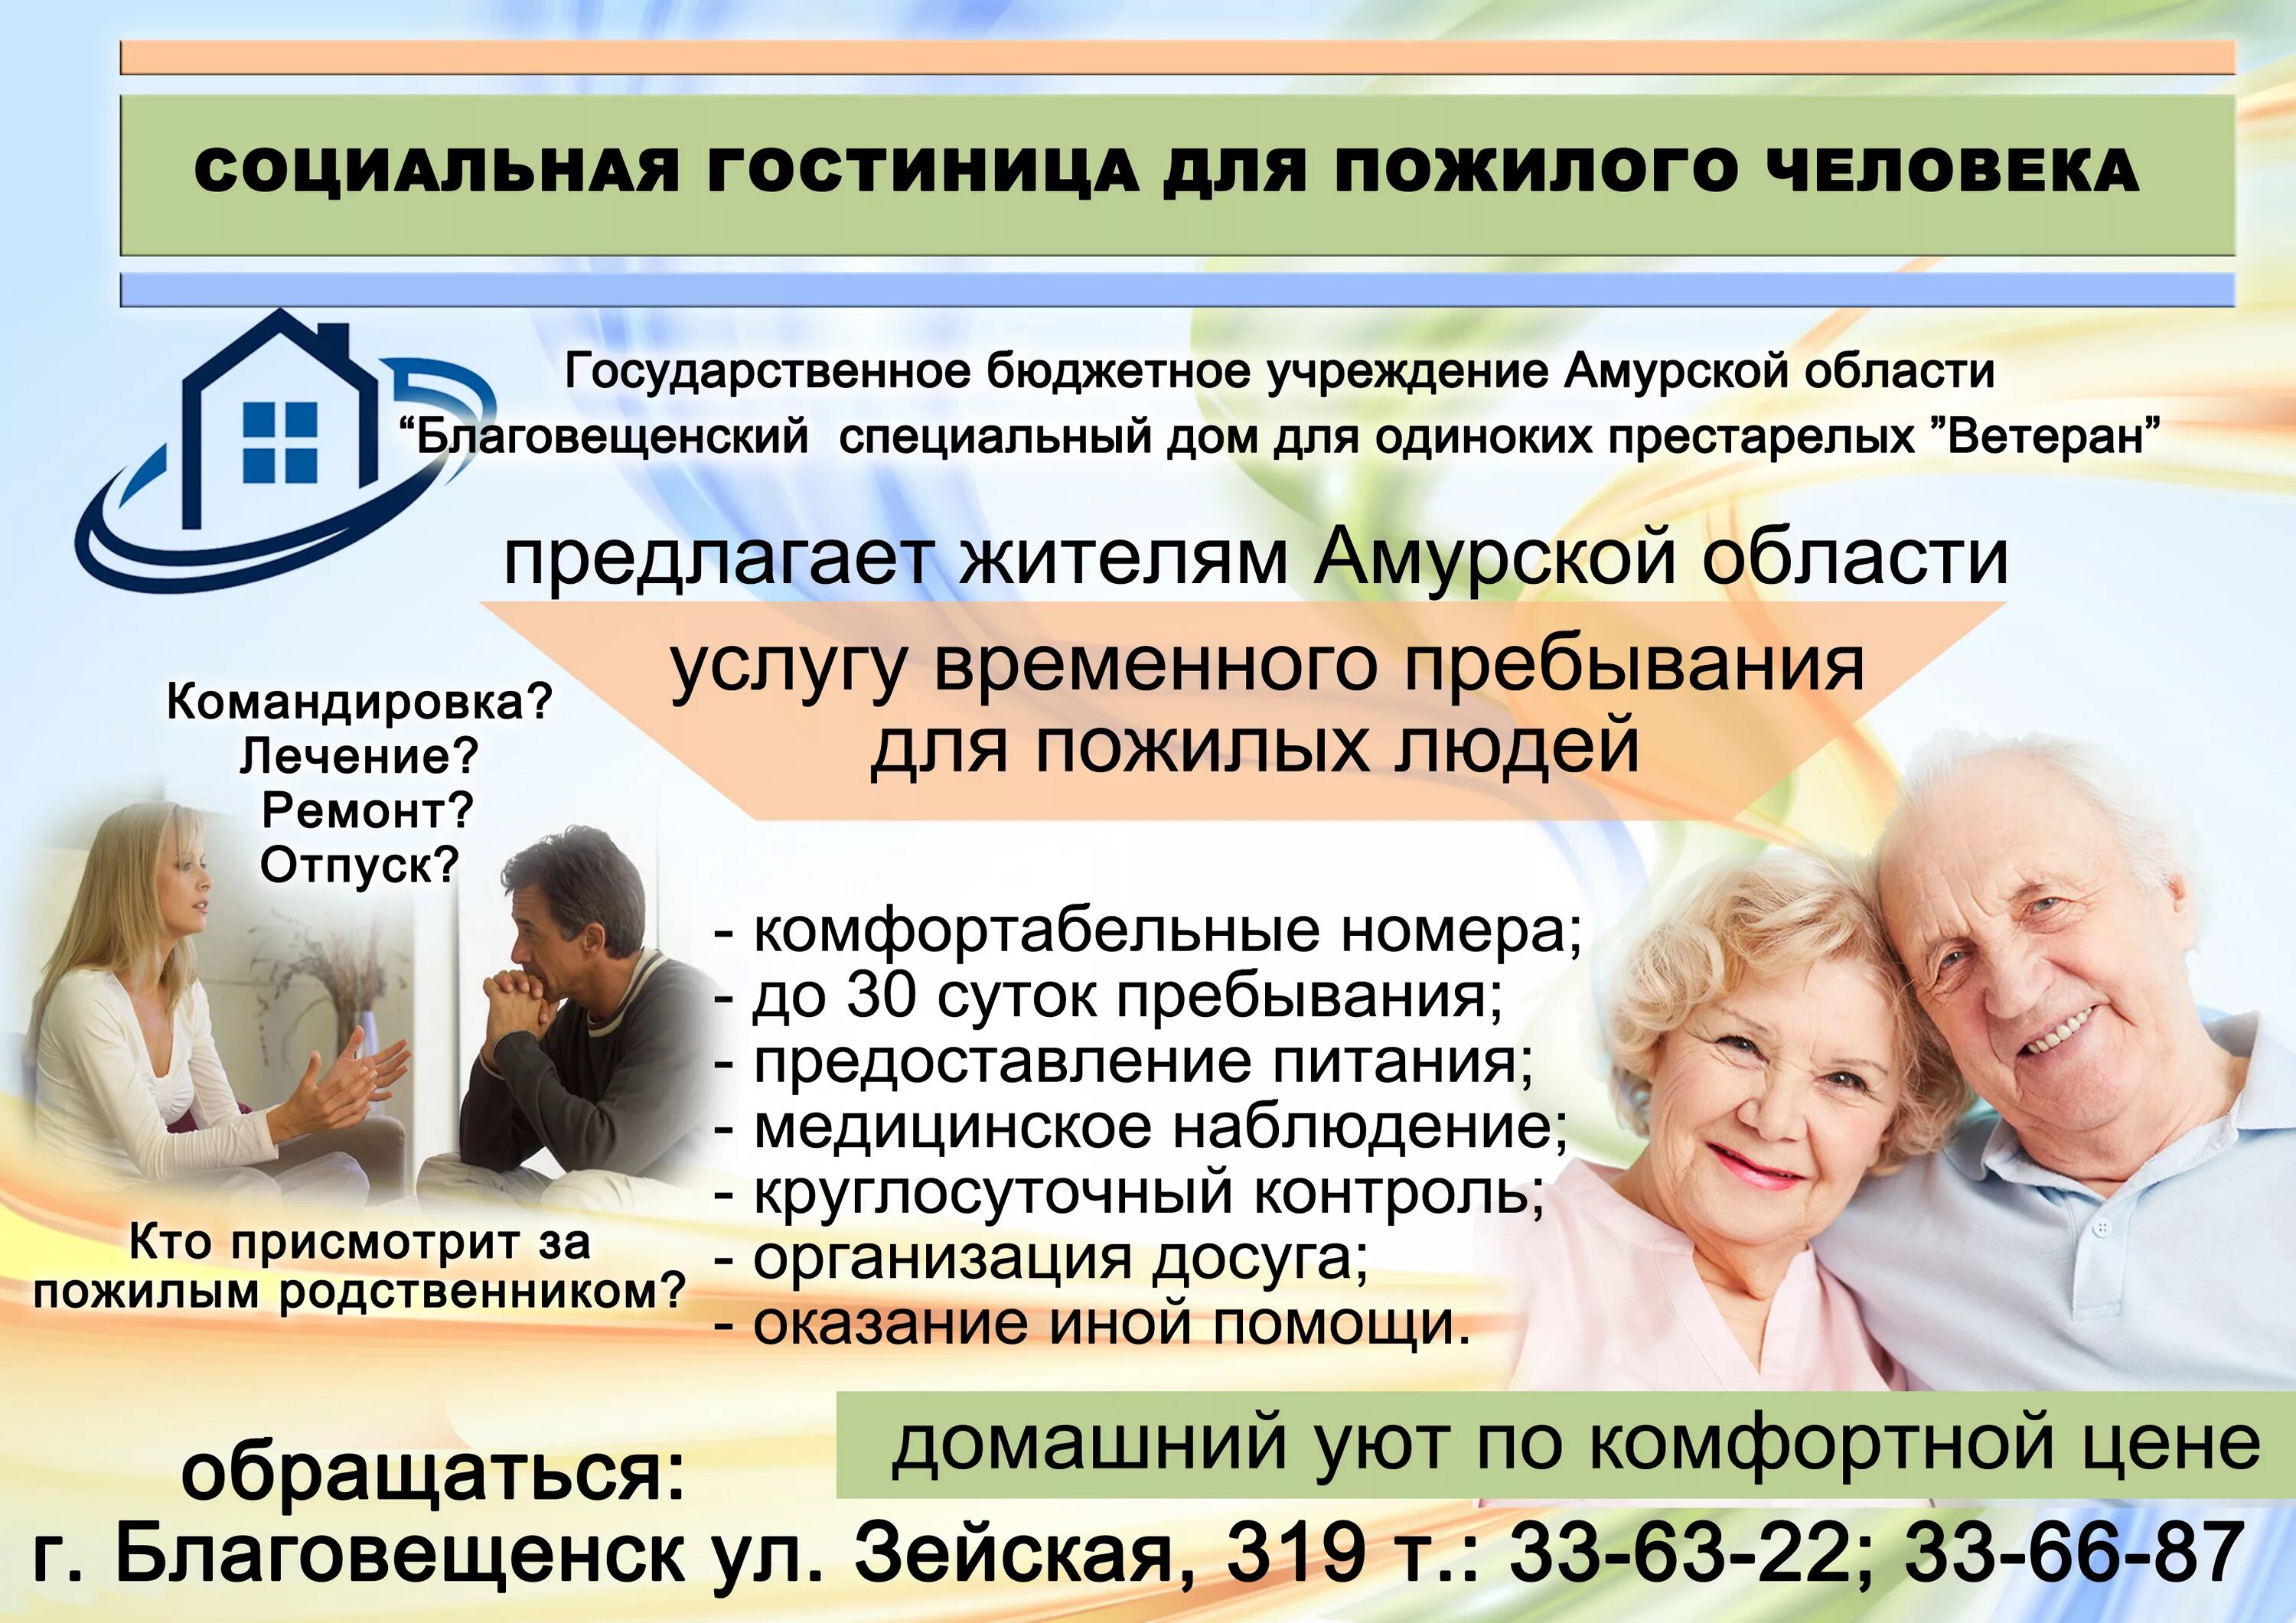 Социальные услуги для пожилых людей. Реклама ко Дню пожилых людей. Реклама для пожилых. Социальный проект для пожилых людей.